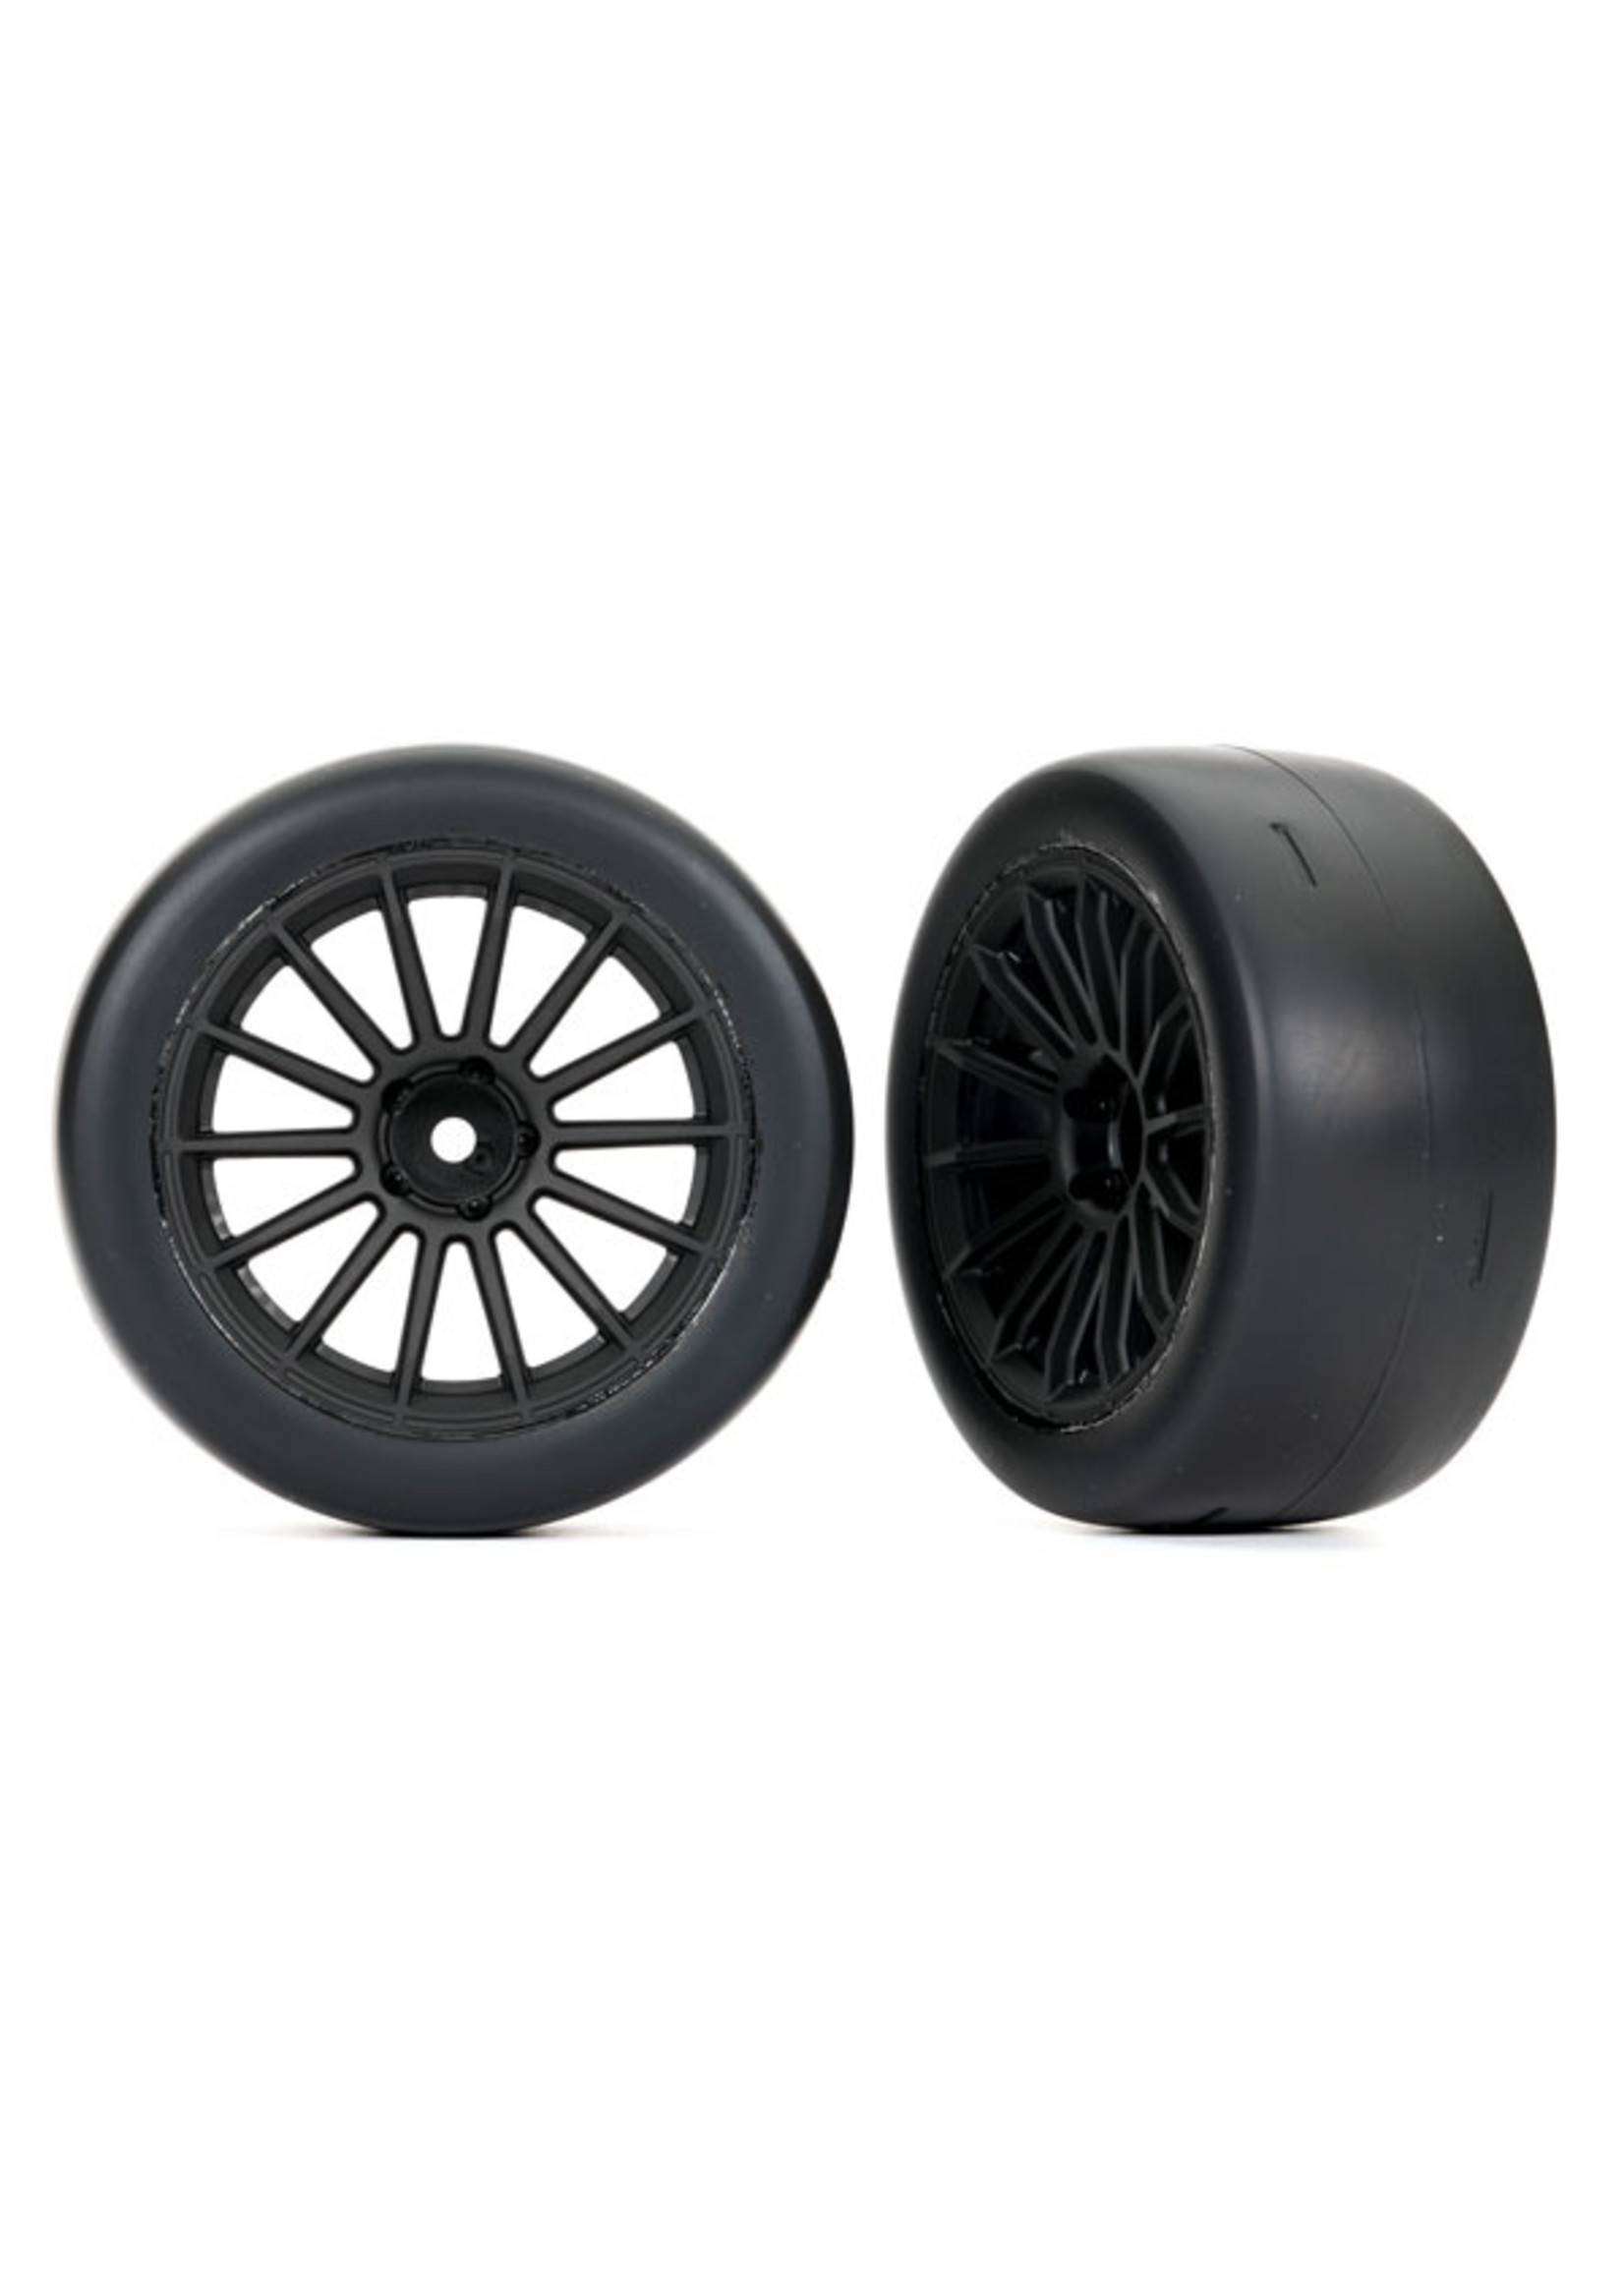 Traxxas 9375 - Multi-spoke Black Wheels / 2.0" Ultra-wide Tires